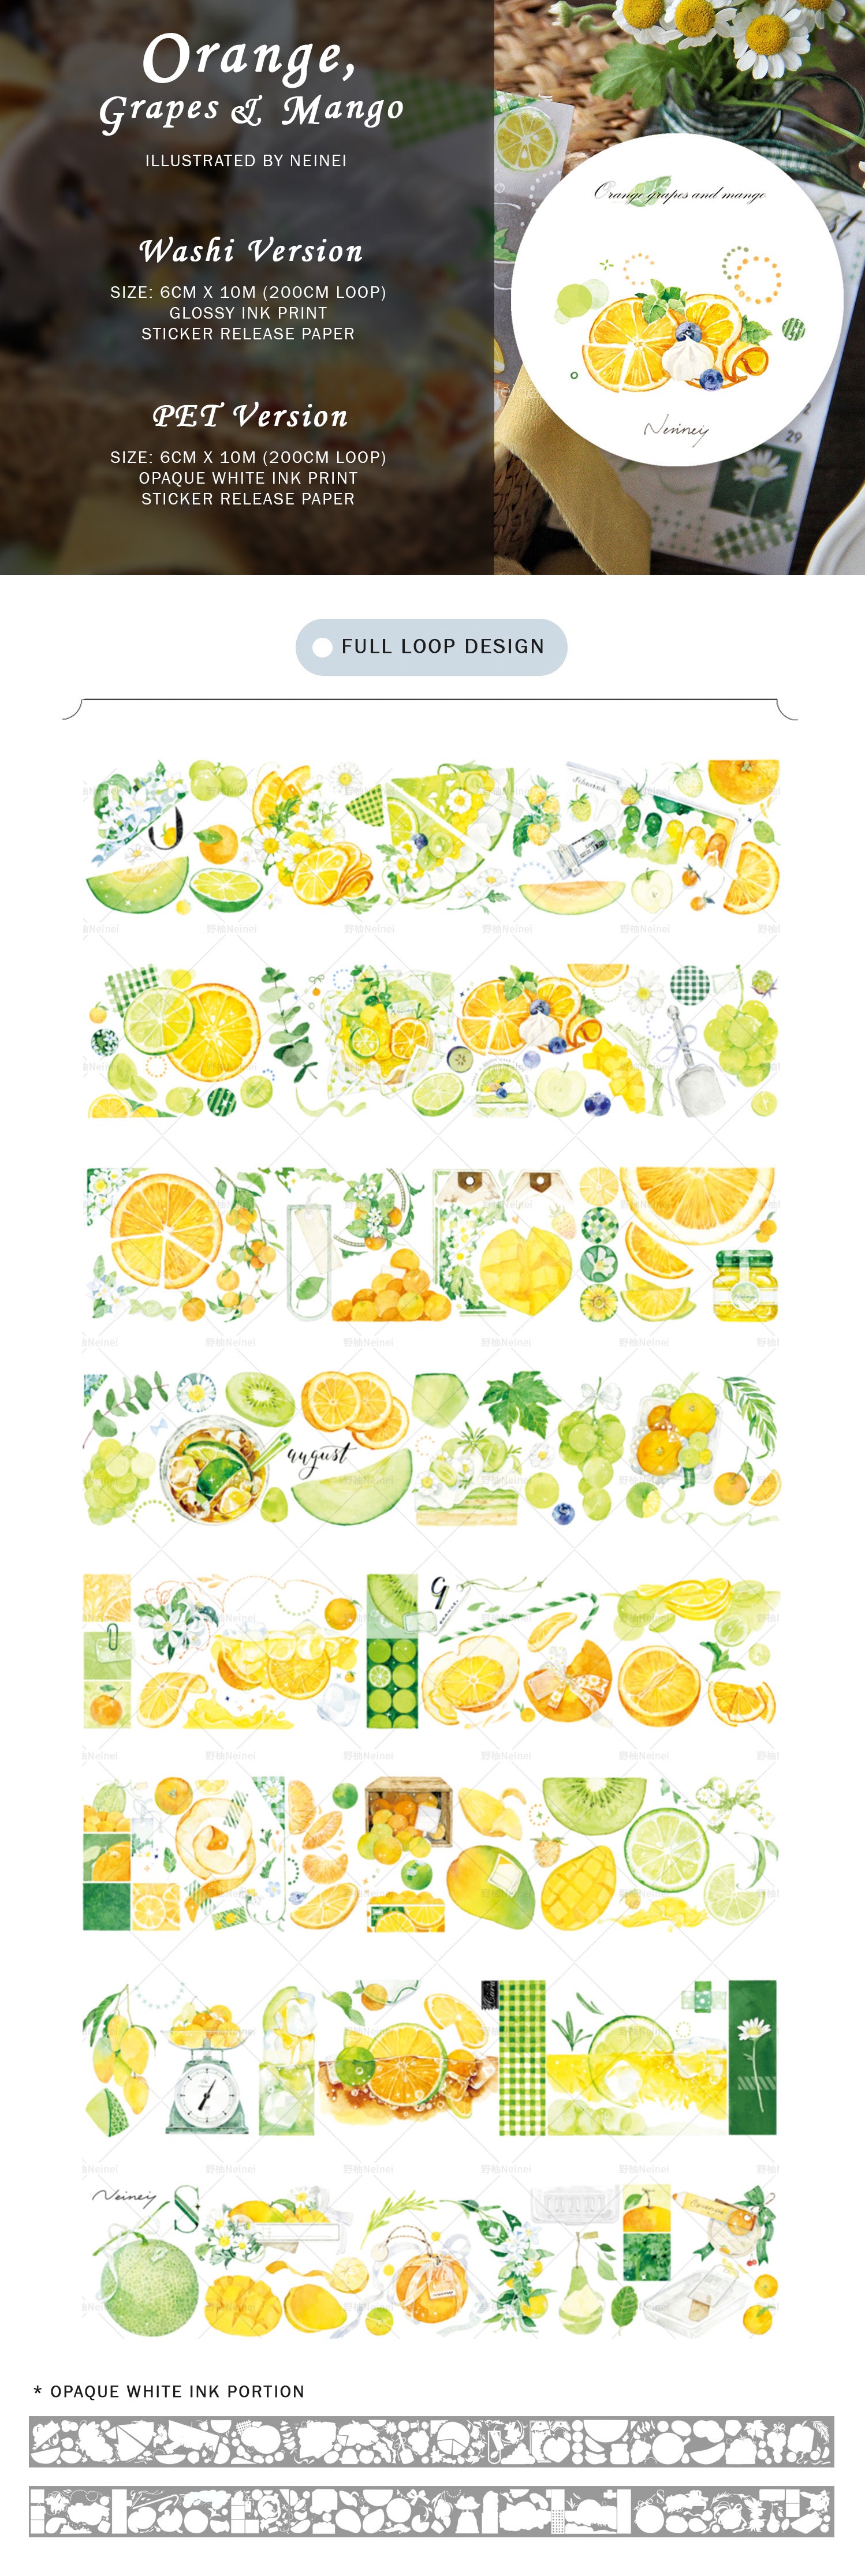 Neinei Illustration Masking Tape: Orange, Grapes, and Mango